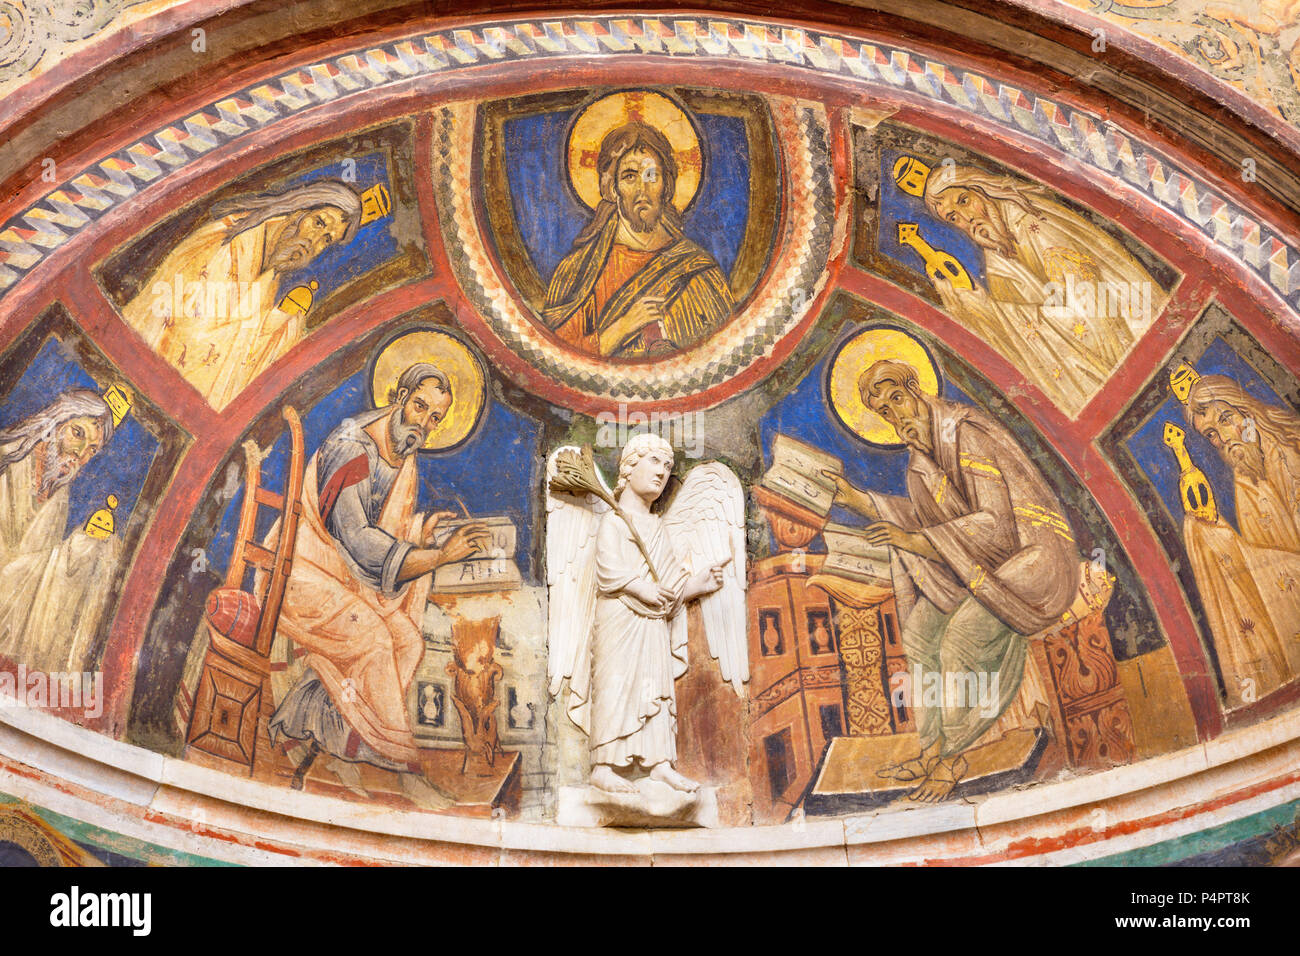 PARMA, Italien - 16. April 2018: Das Fresko Jesus Christus und Evangelisten St. Lukas und Johannes in der taufkapelle von 14 - 15. Stockfoto